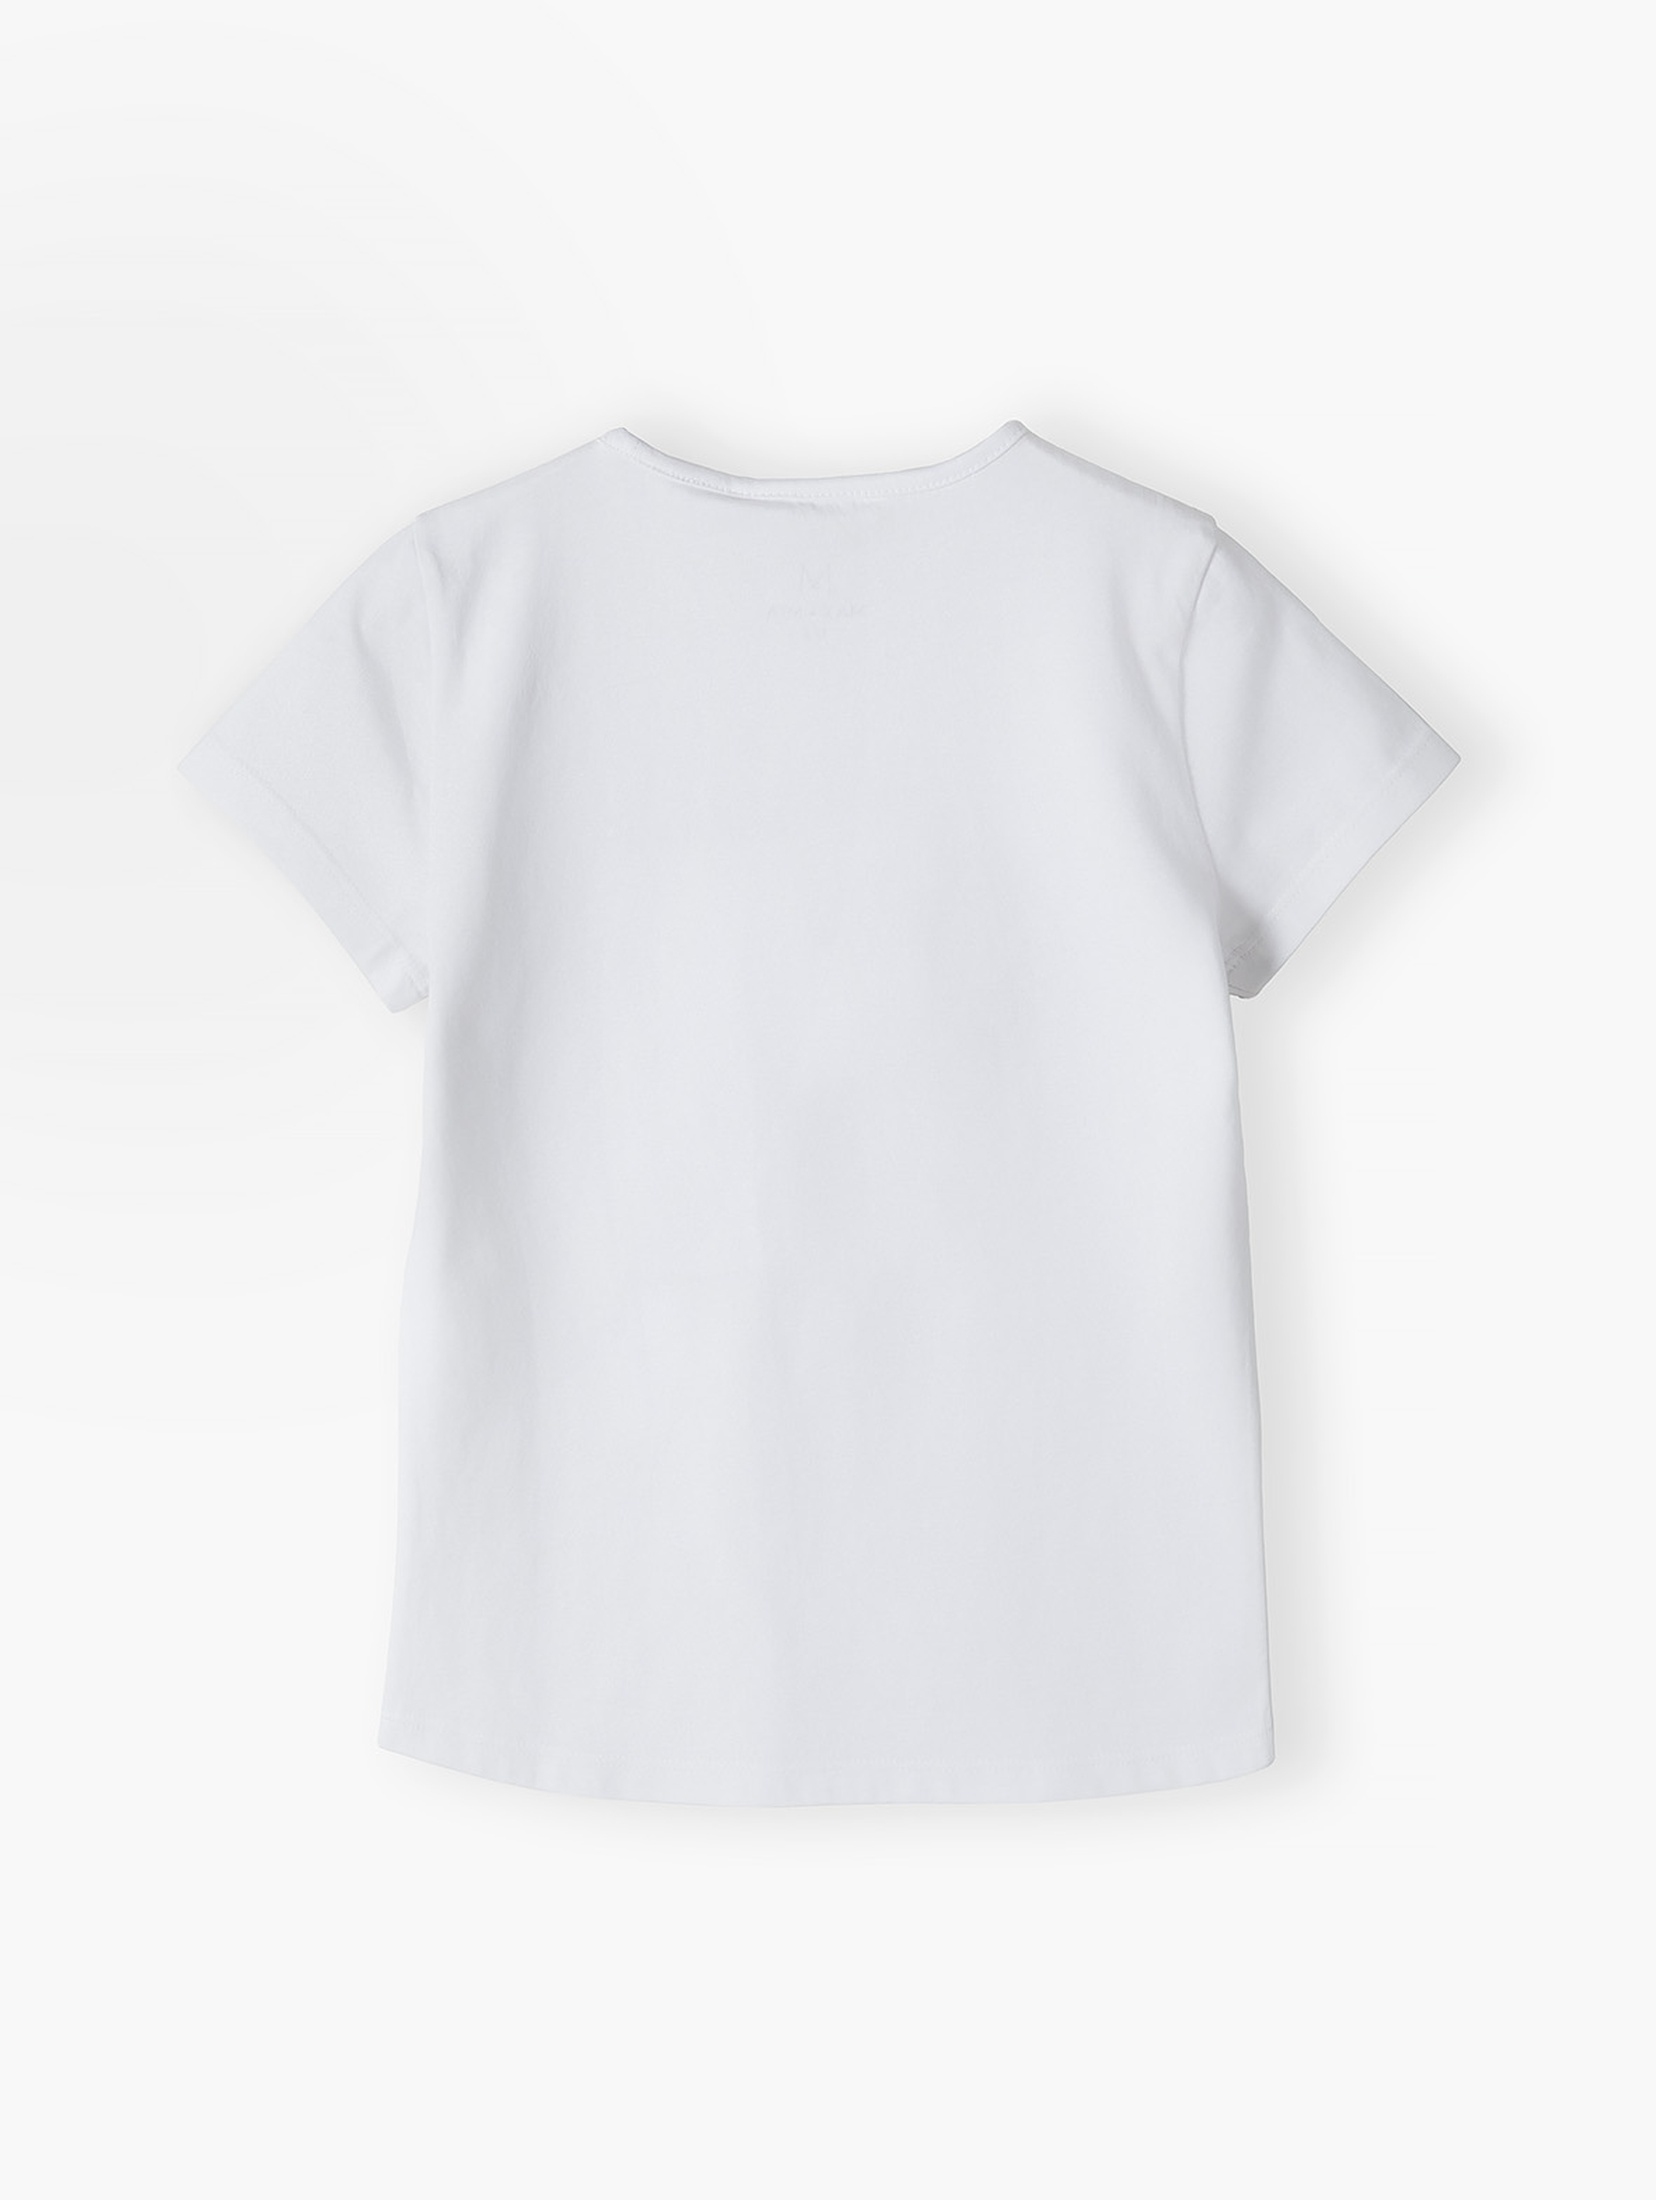 Biały t-shirt bawełniany dla dziewczynki z serduszkiem